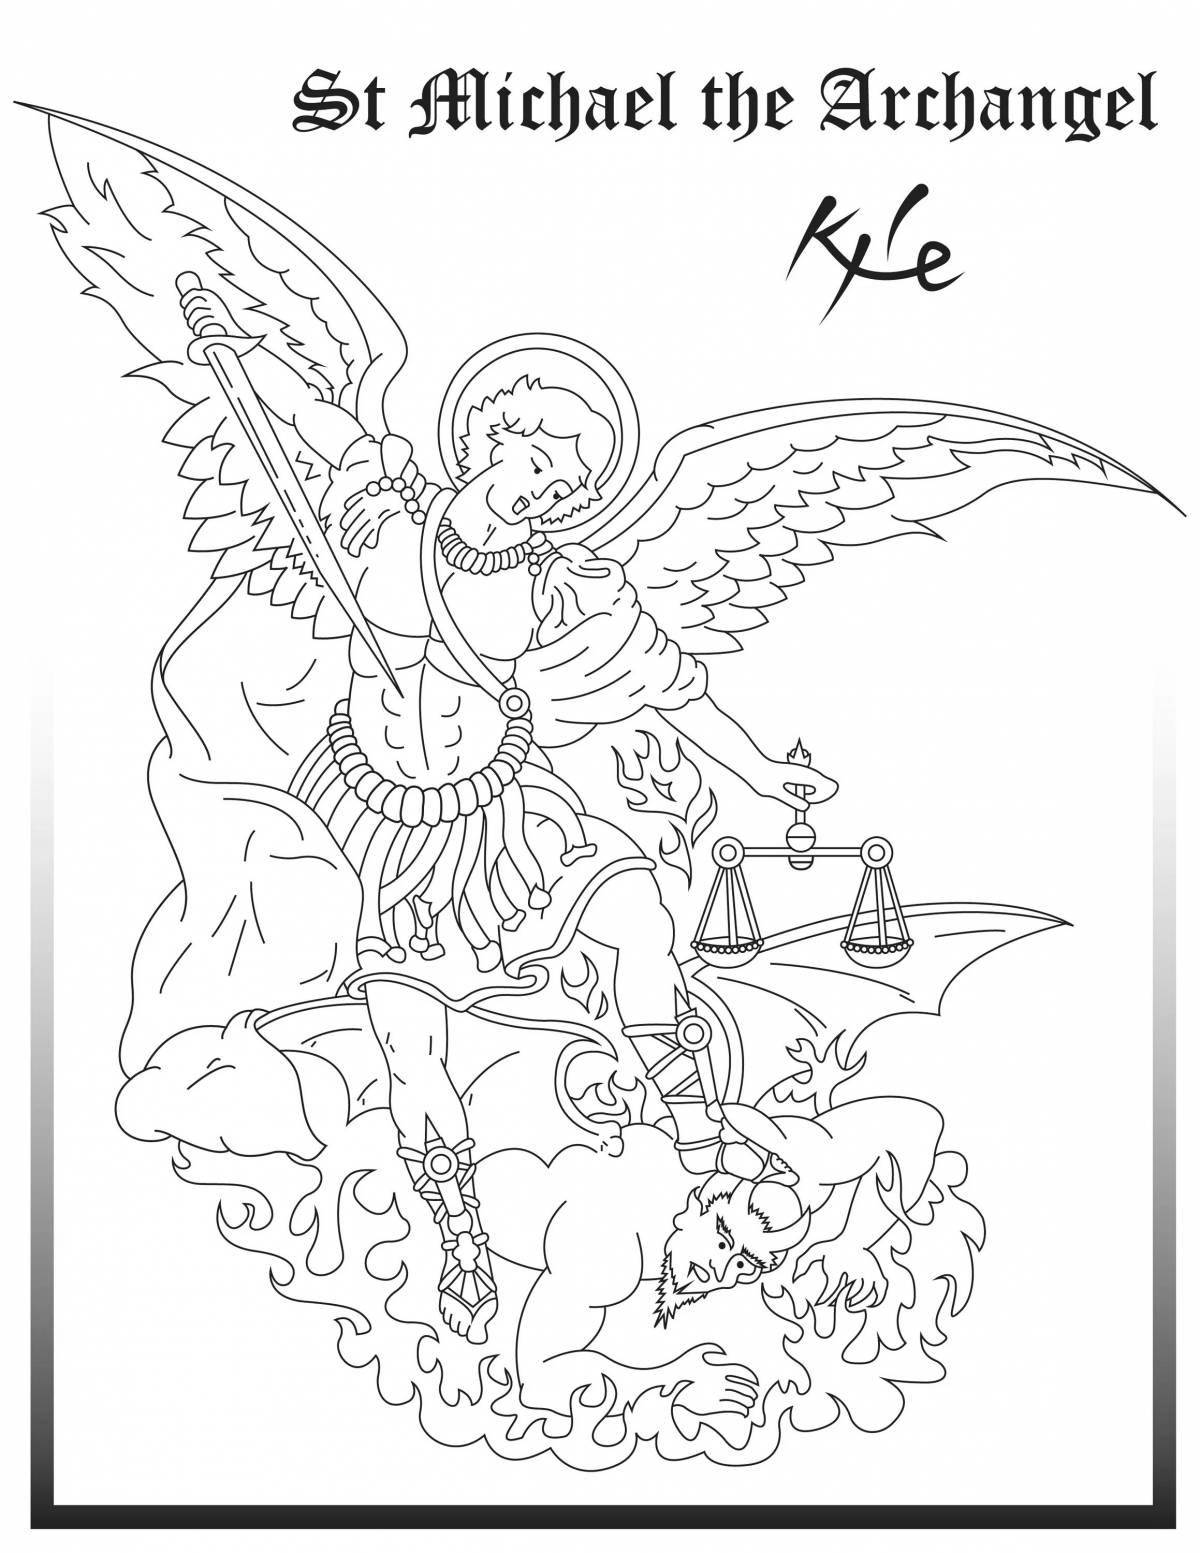 Раскраска царственный архангел михаил